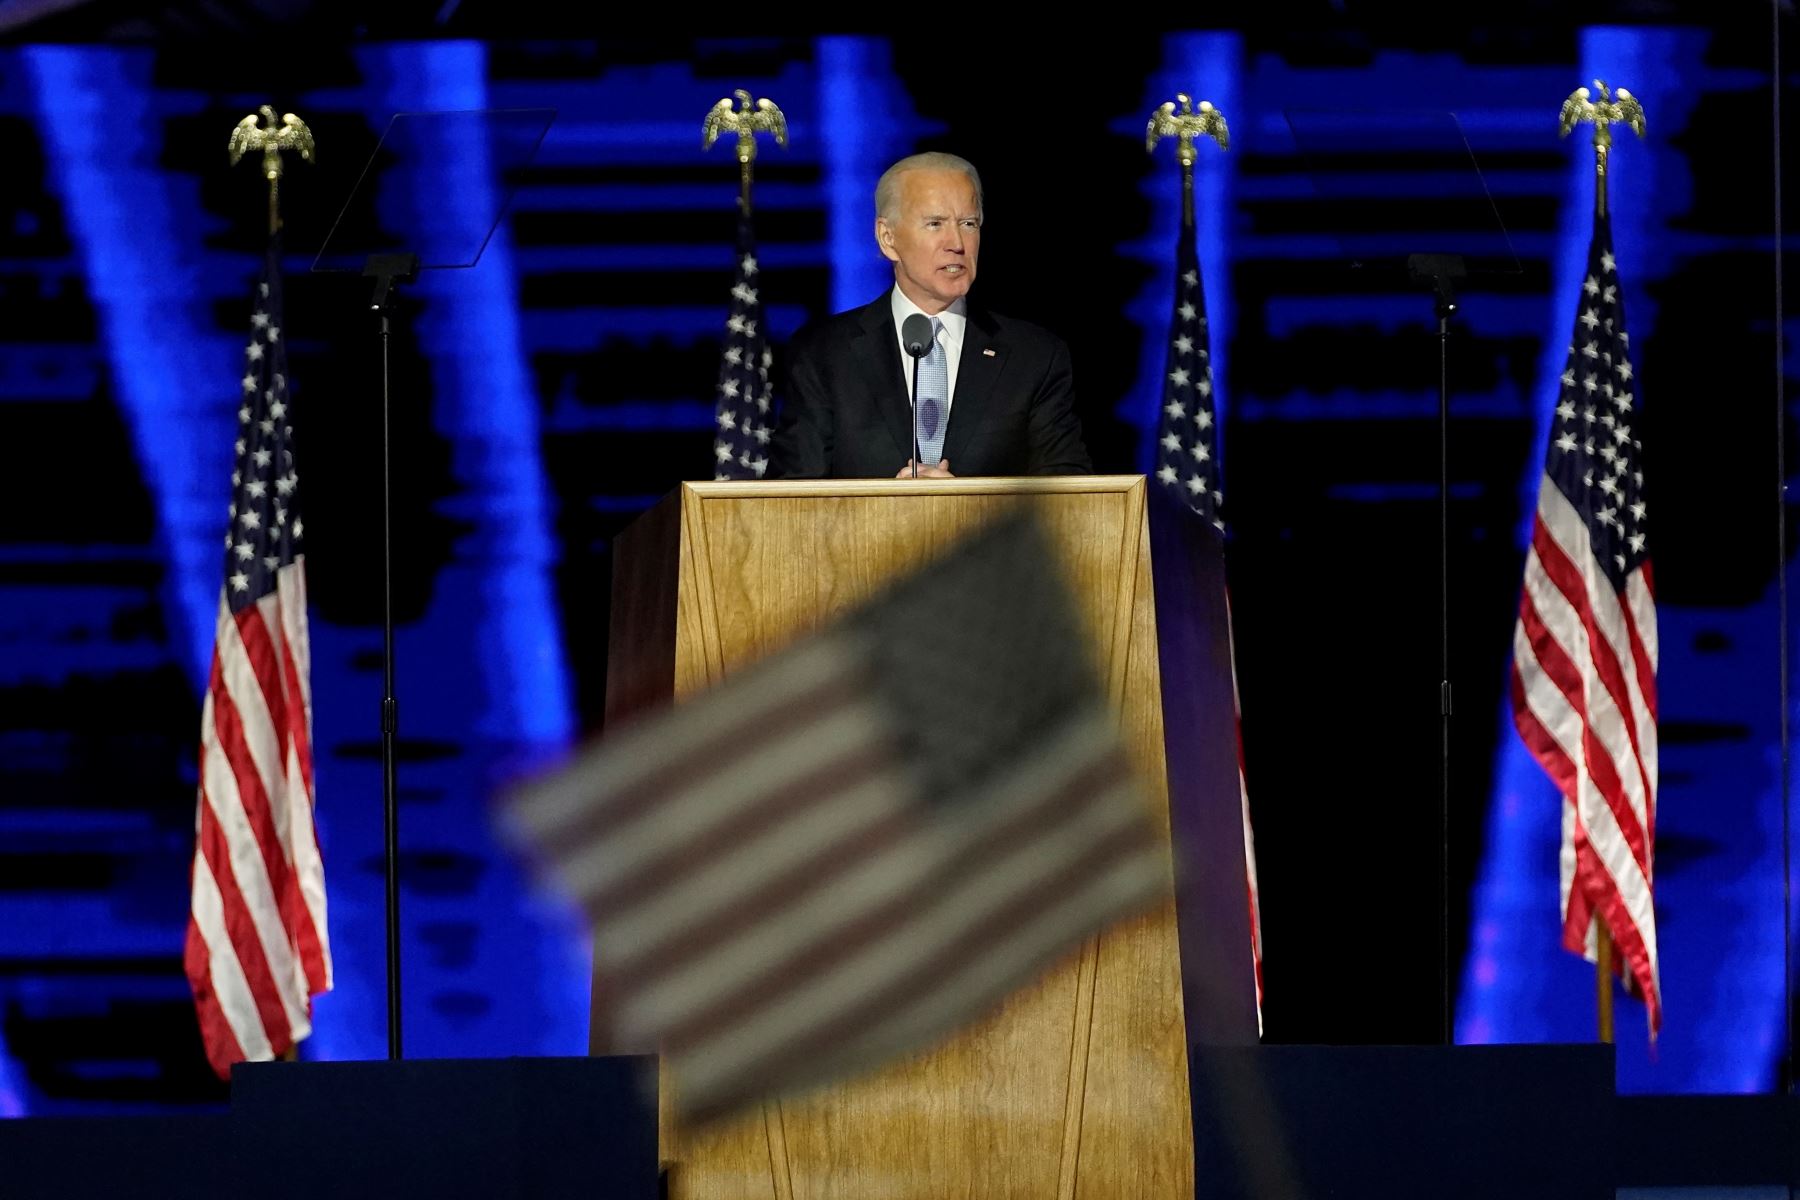 El presidente electo de los Estados Unidos, Joe Biden pronuncia un discurso en Wilmington, Delaware, luego de ser declarado ganador de las elecciones presidenciales.
Foto: AFP